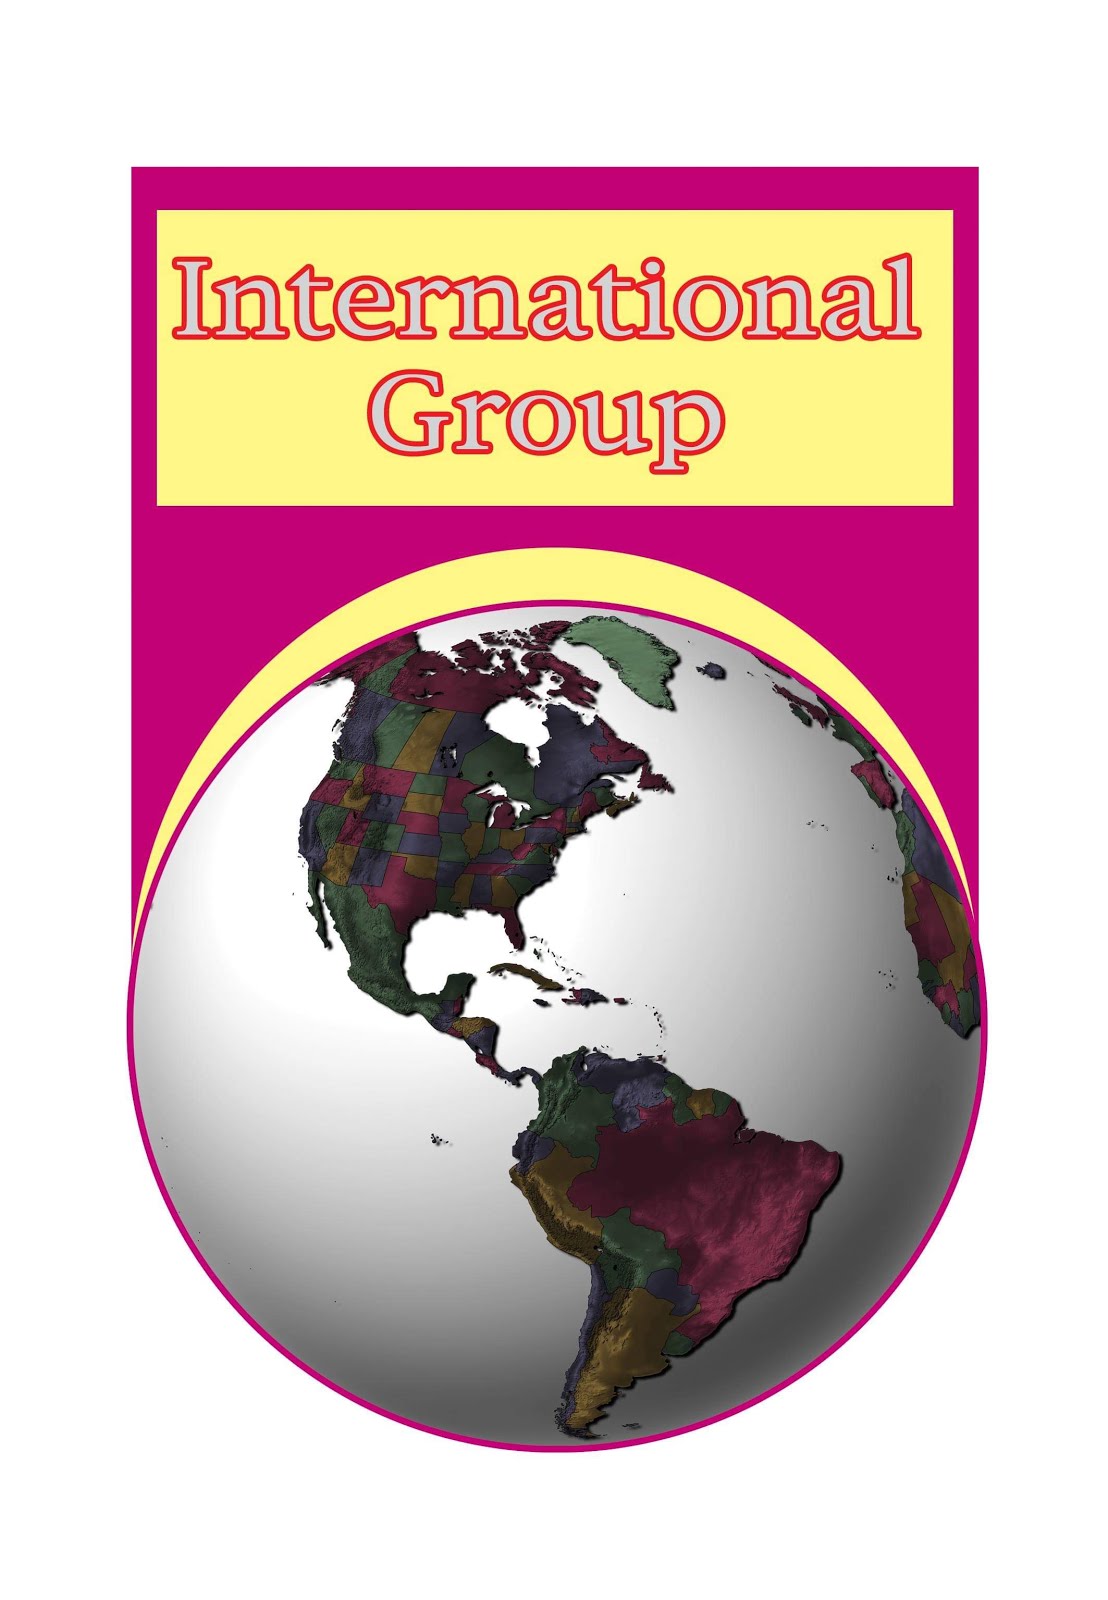 المجموعة الدولية للفندقة والخدمات السياحية